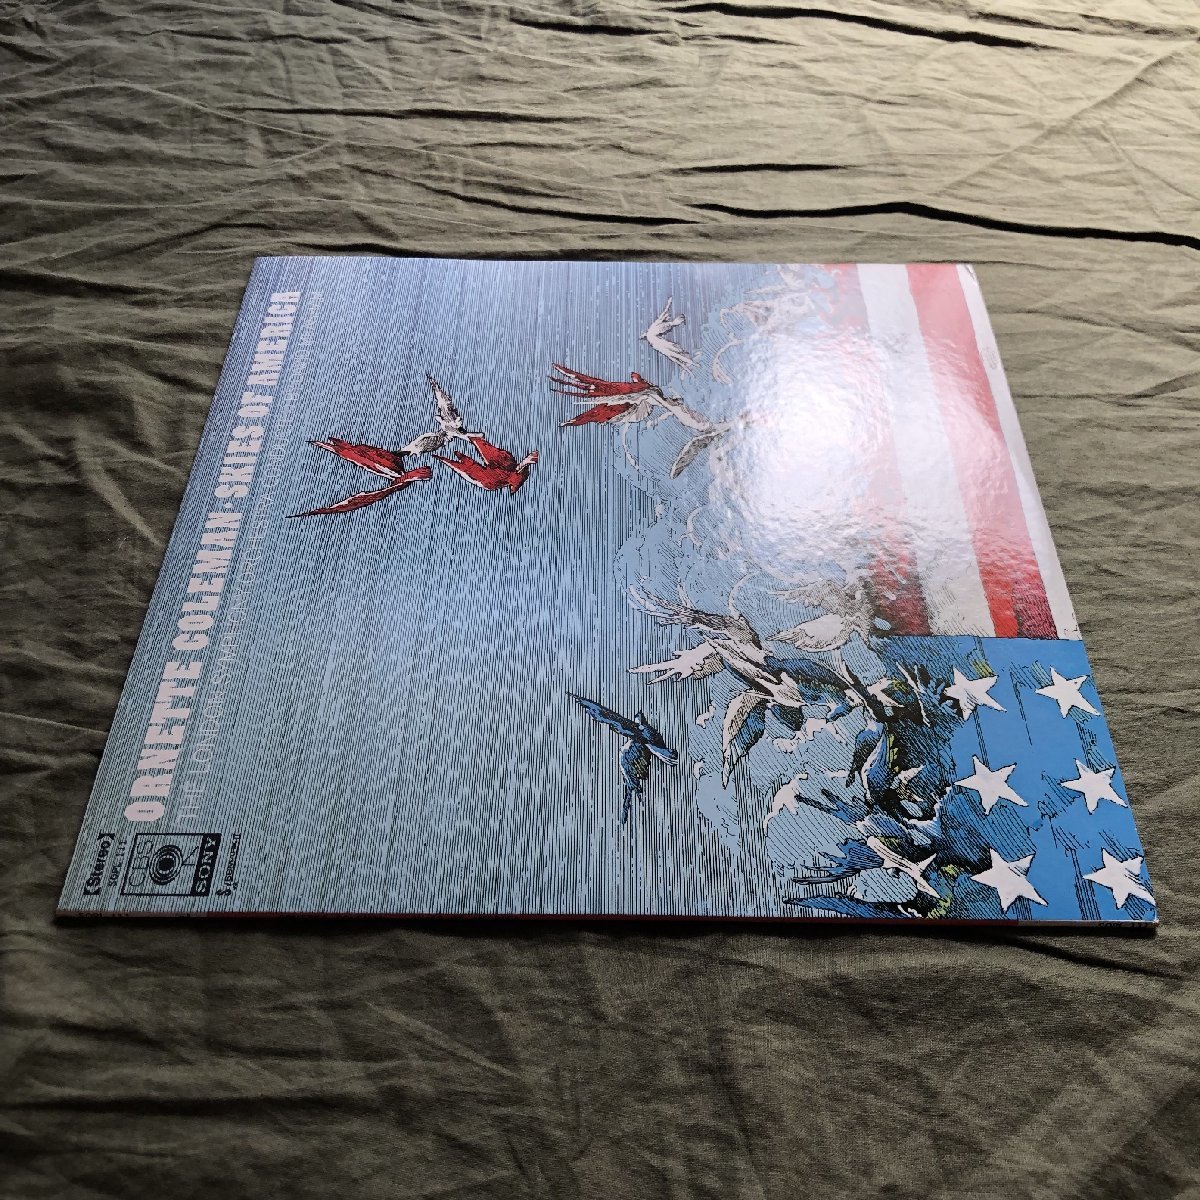 原信夫Collection 傷なし美盤 美ジャケ 新品並み 1972年 国内初盤 オーネット・コールマン Ornette Coleman LPレコード Skies Of America:_画像3